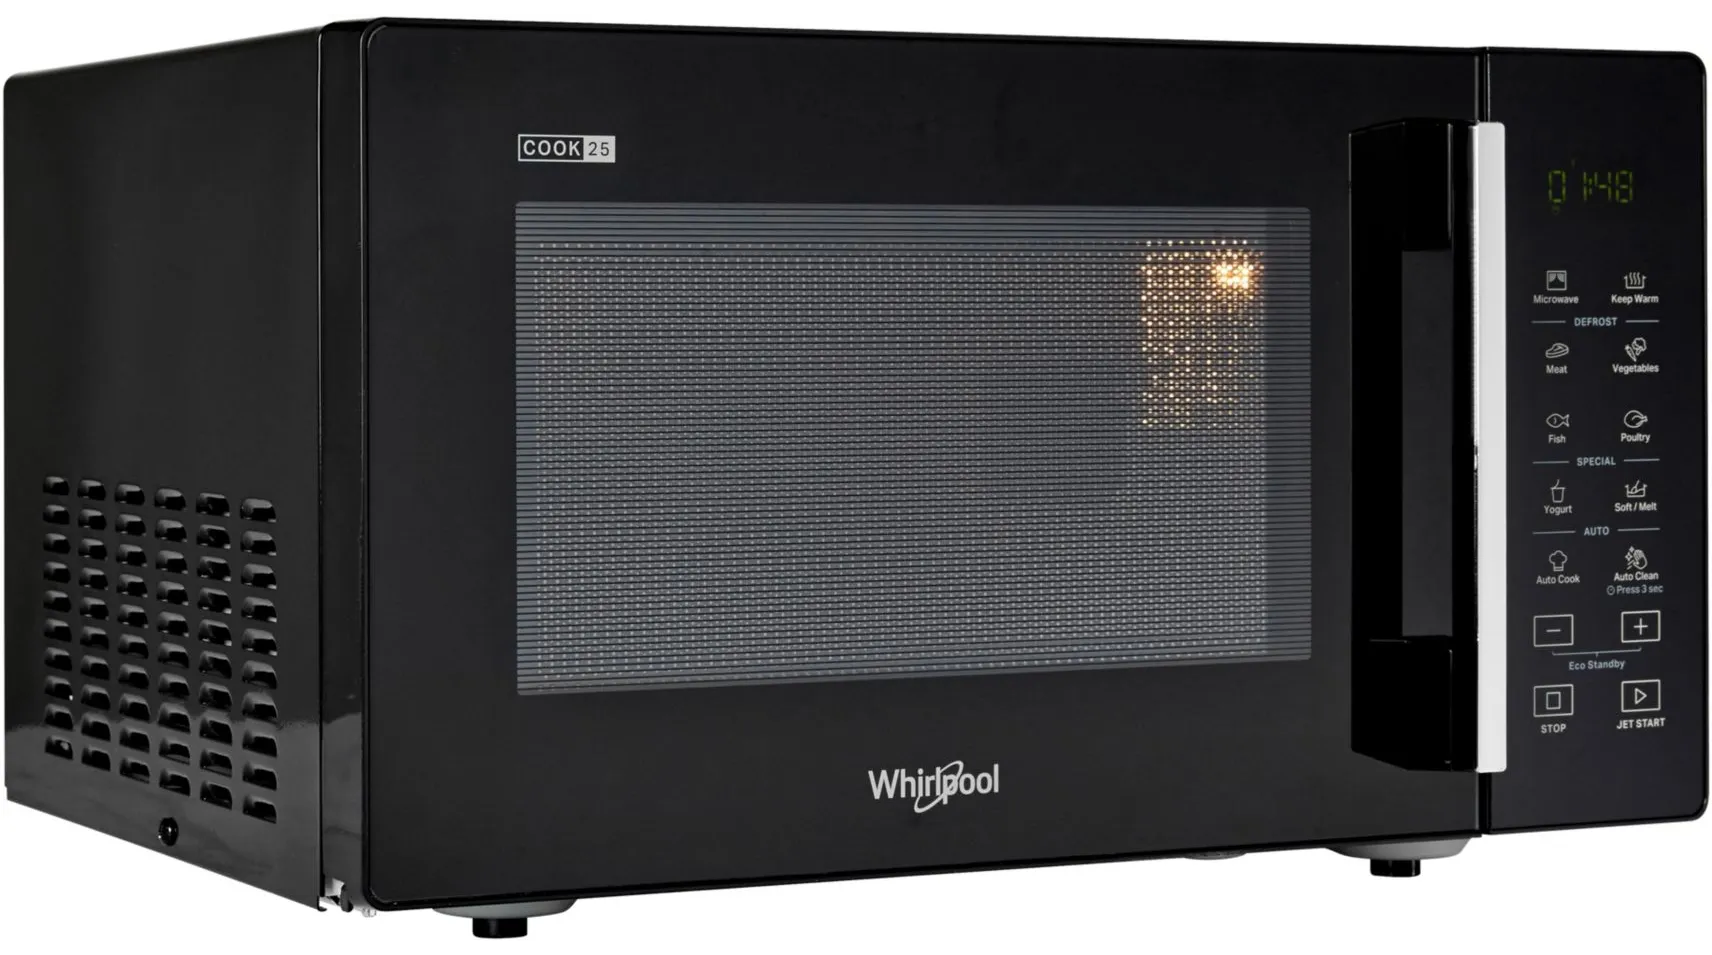 MWP251B Micro-ondes Whirlpool 25 L 900 W Noir - MWP251B - 1